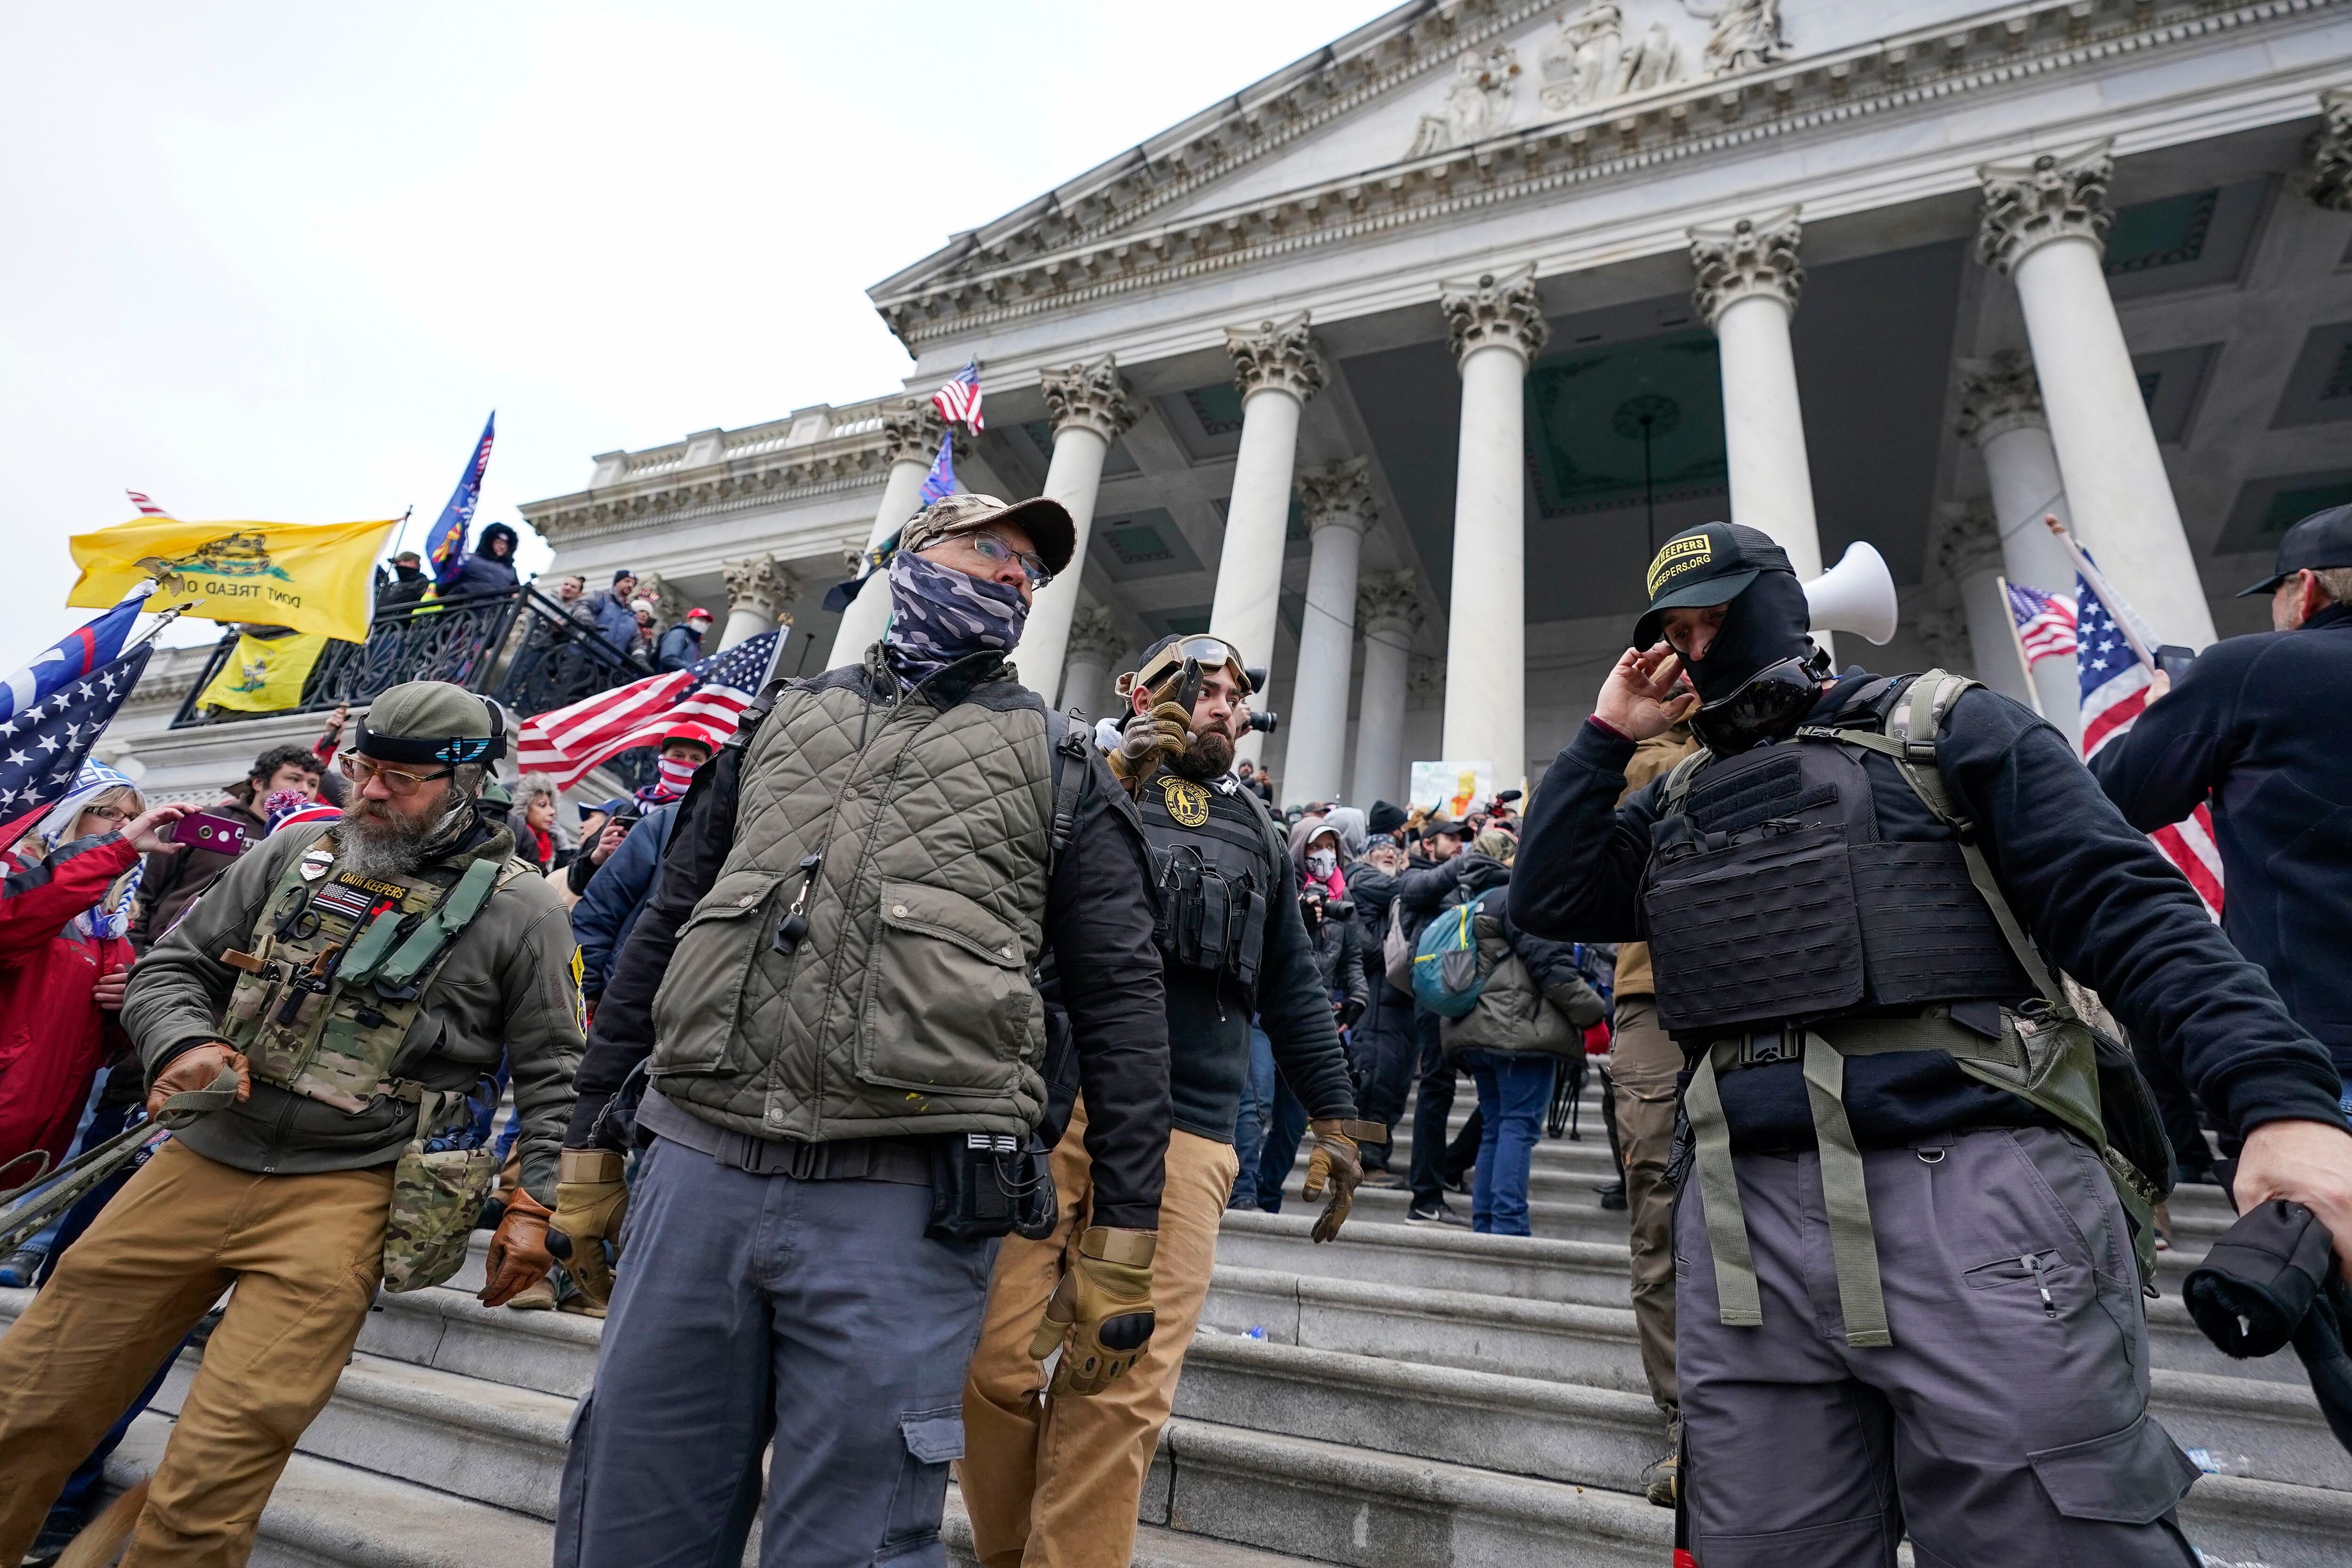 Integrantes del grupo extremista Oath Keepers se mantienen frente al Capitolio de Estados Unidos, el 6 de enero de 2021 (AP Foto/Manuel Balce Ceneta, archivo)